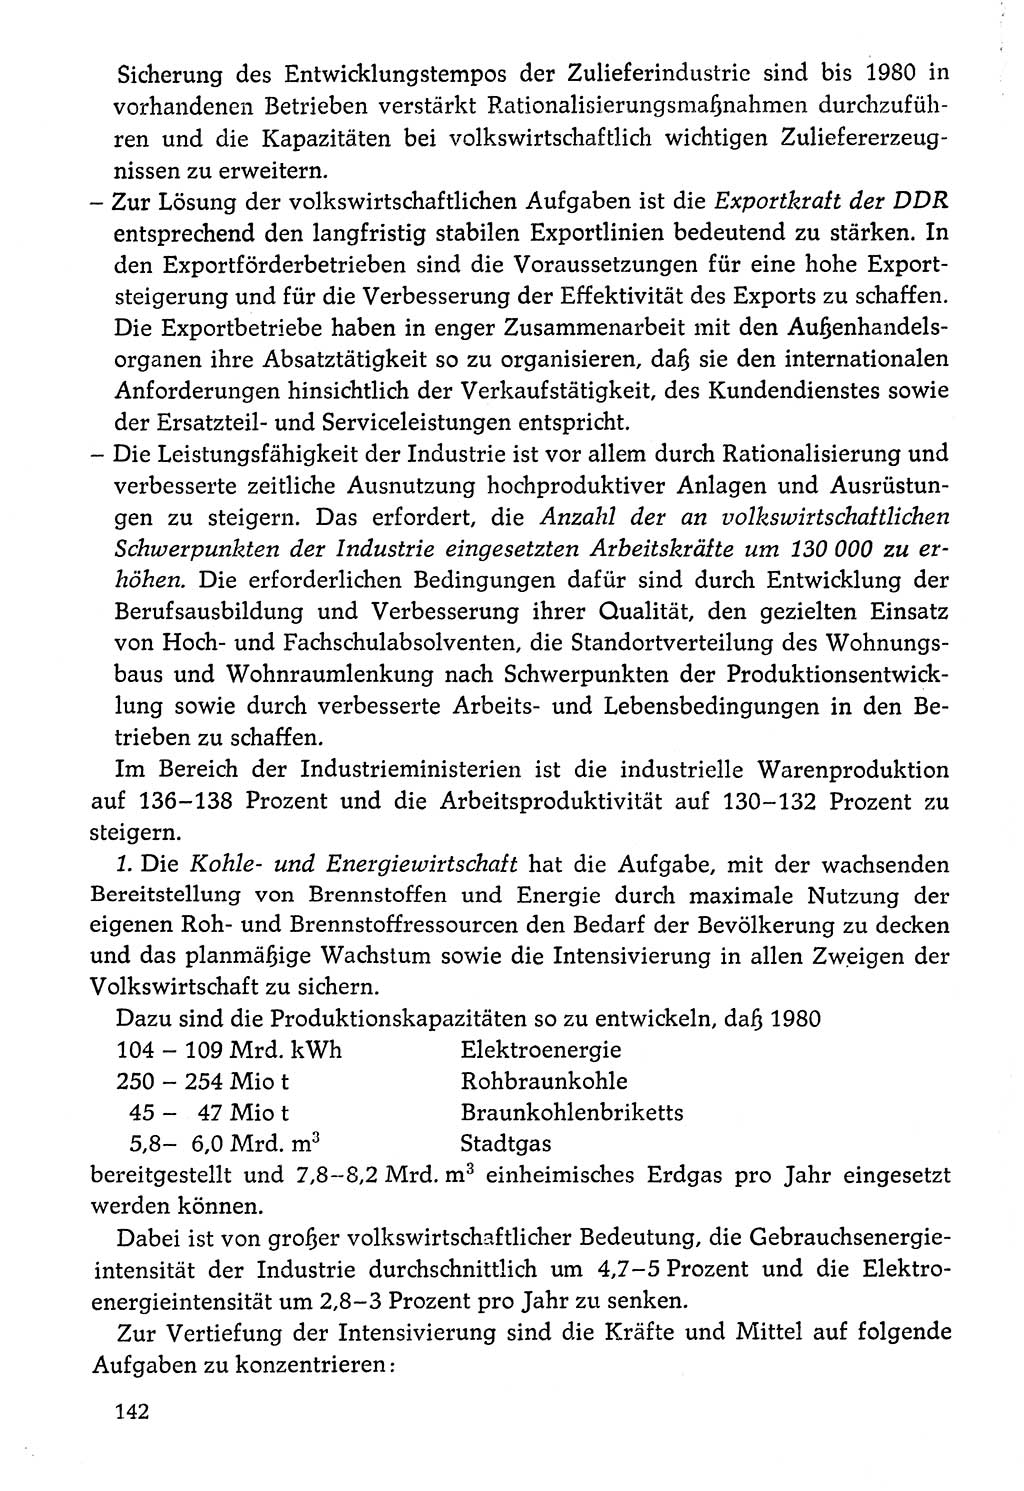 Dokumente der Sozialistischen Einheitspartei Deutschlands (SED) [Deutsche Demokratische Republik (DDR)] 1976-1977, Seite 142 (Dok. SED DDR 1976-1977, S. 142)